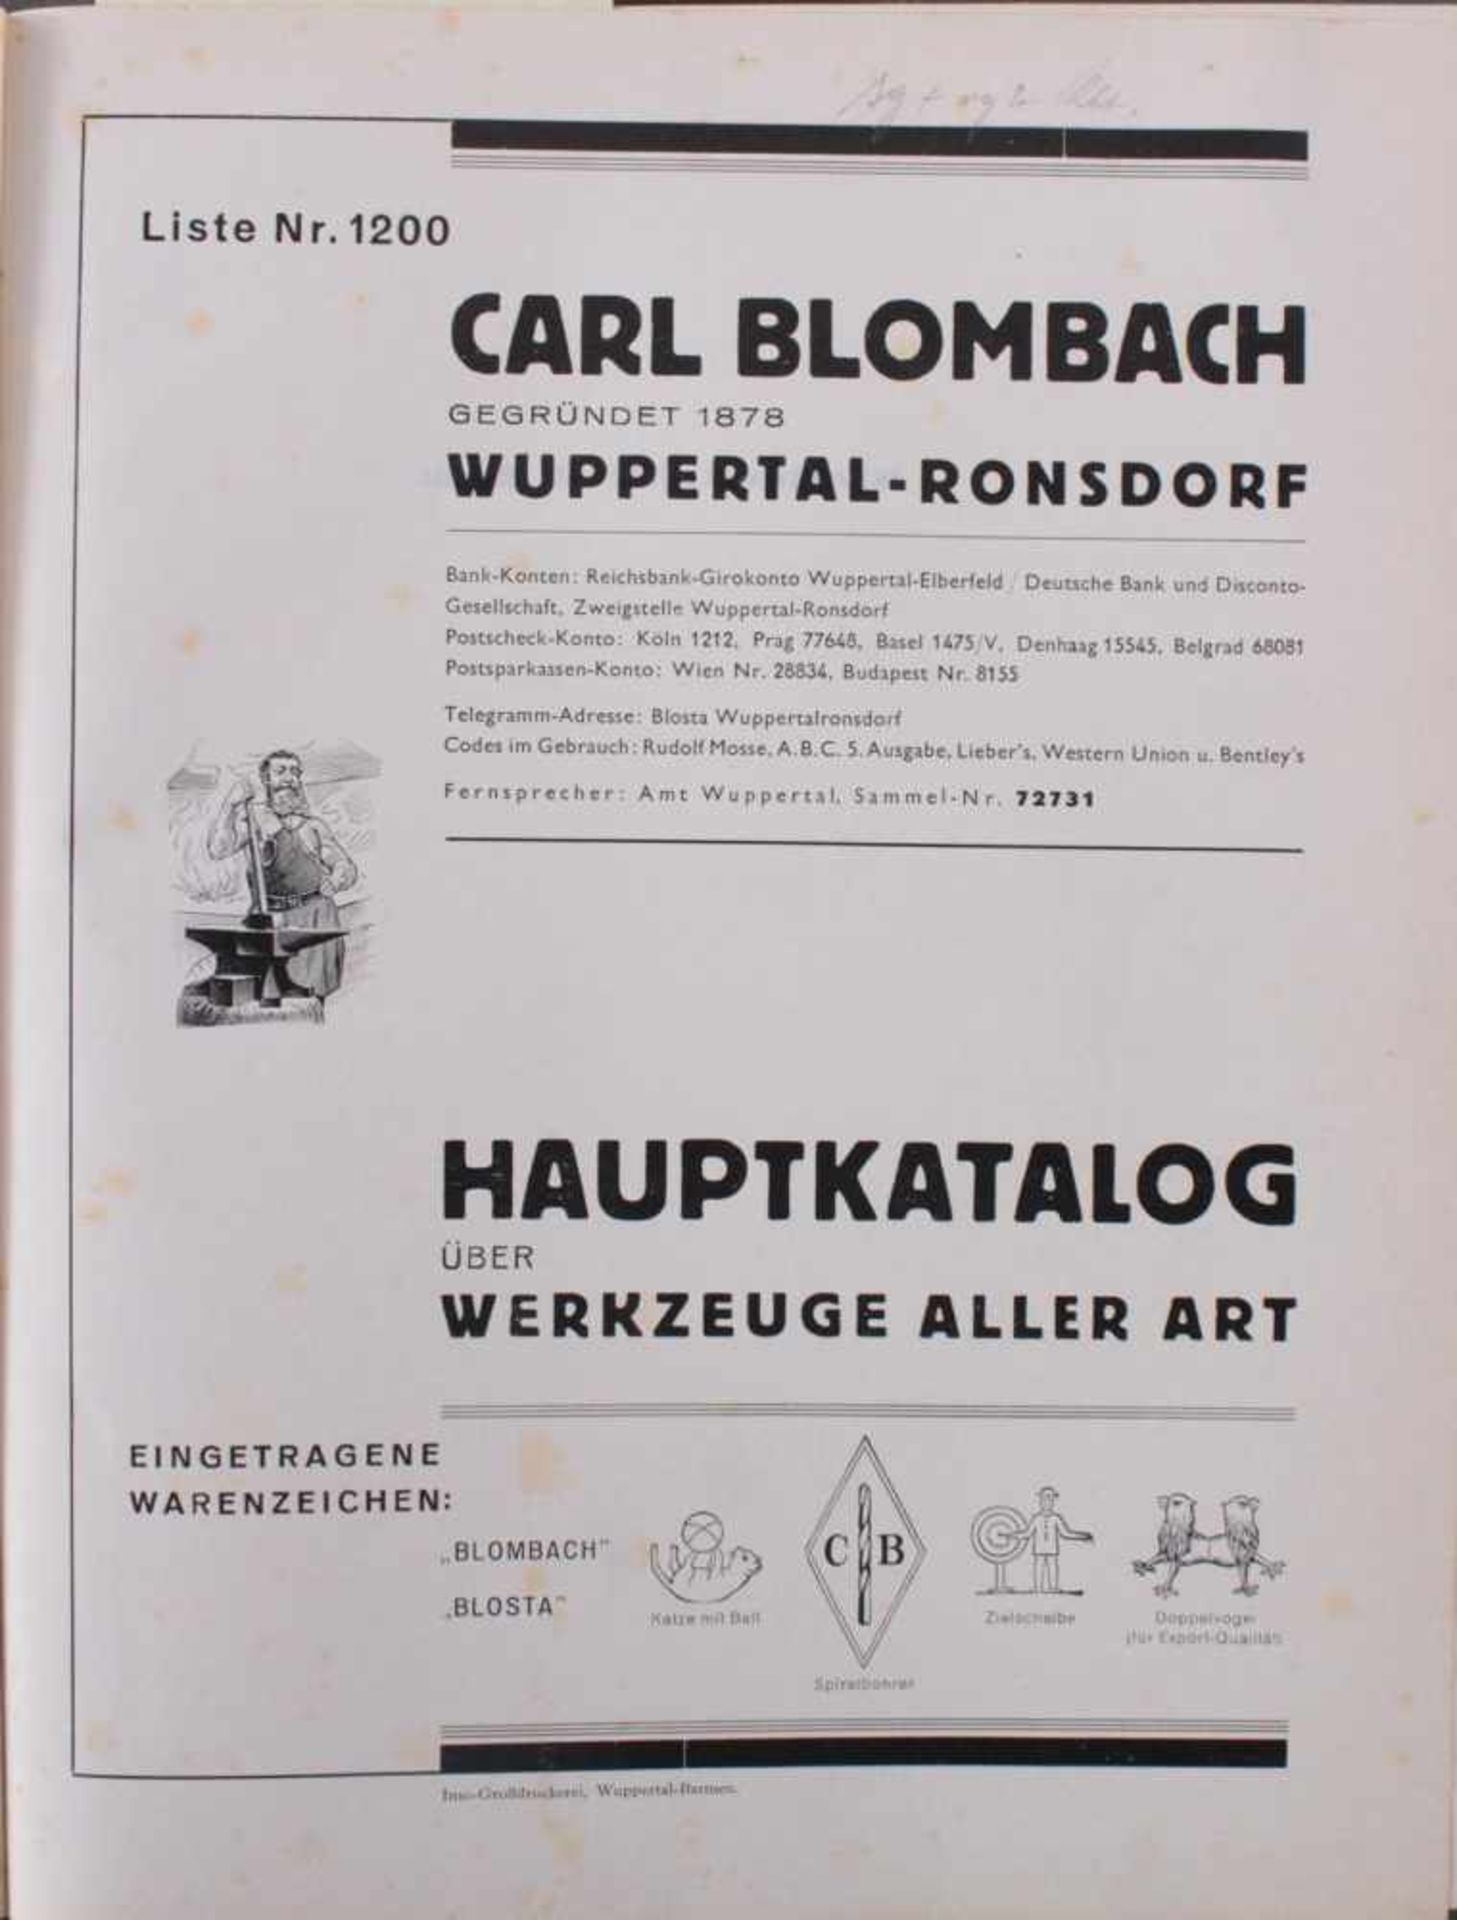 Blosta Werkzeug Katalog von 1920Carl Brombach, Ronsdorf Remscheid, Werkzeuge aller Art. Haupt- - Bild 2 aus 3